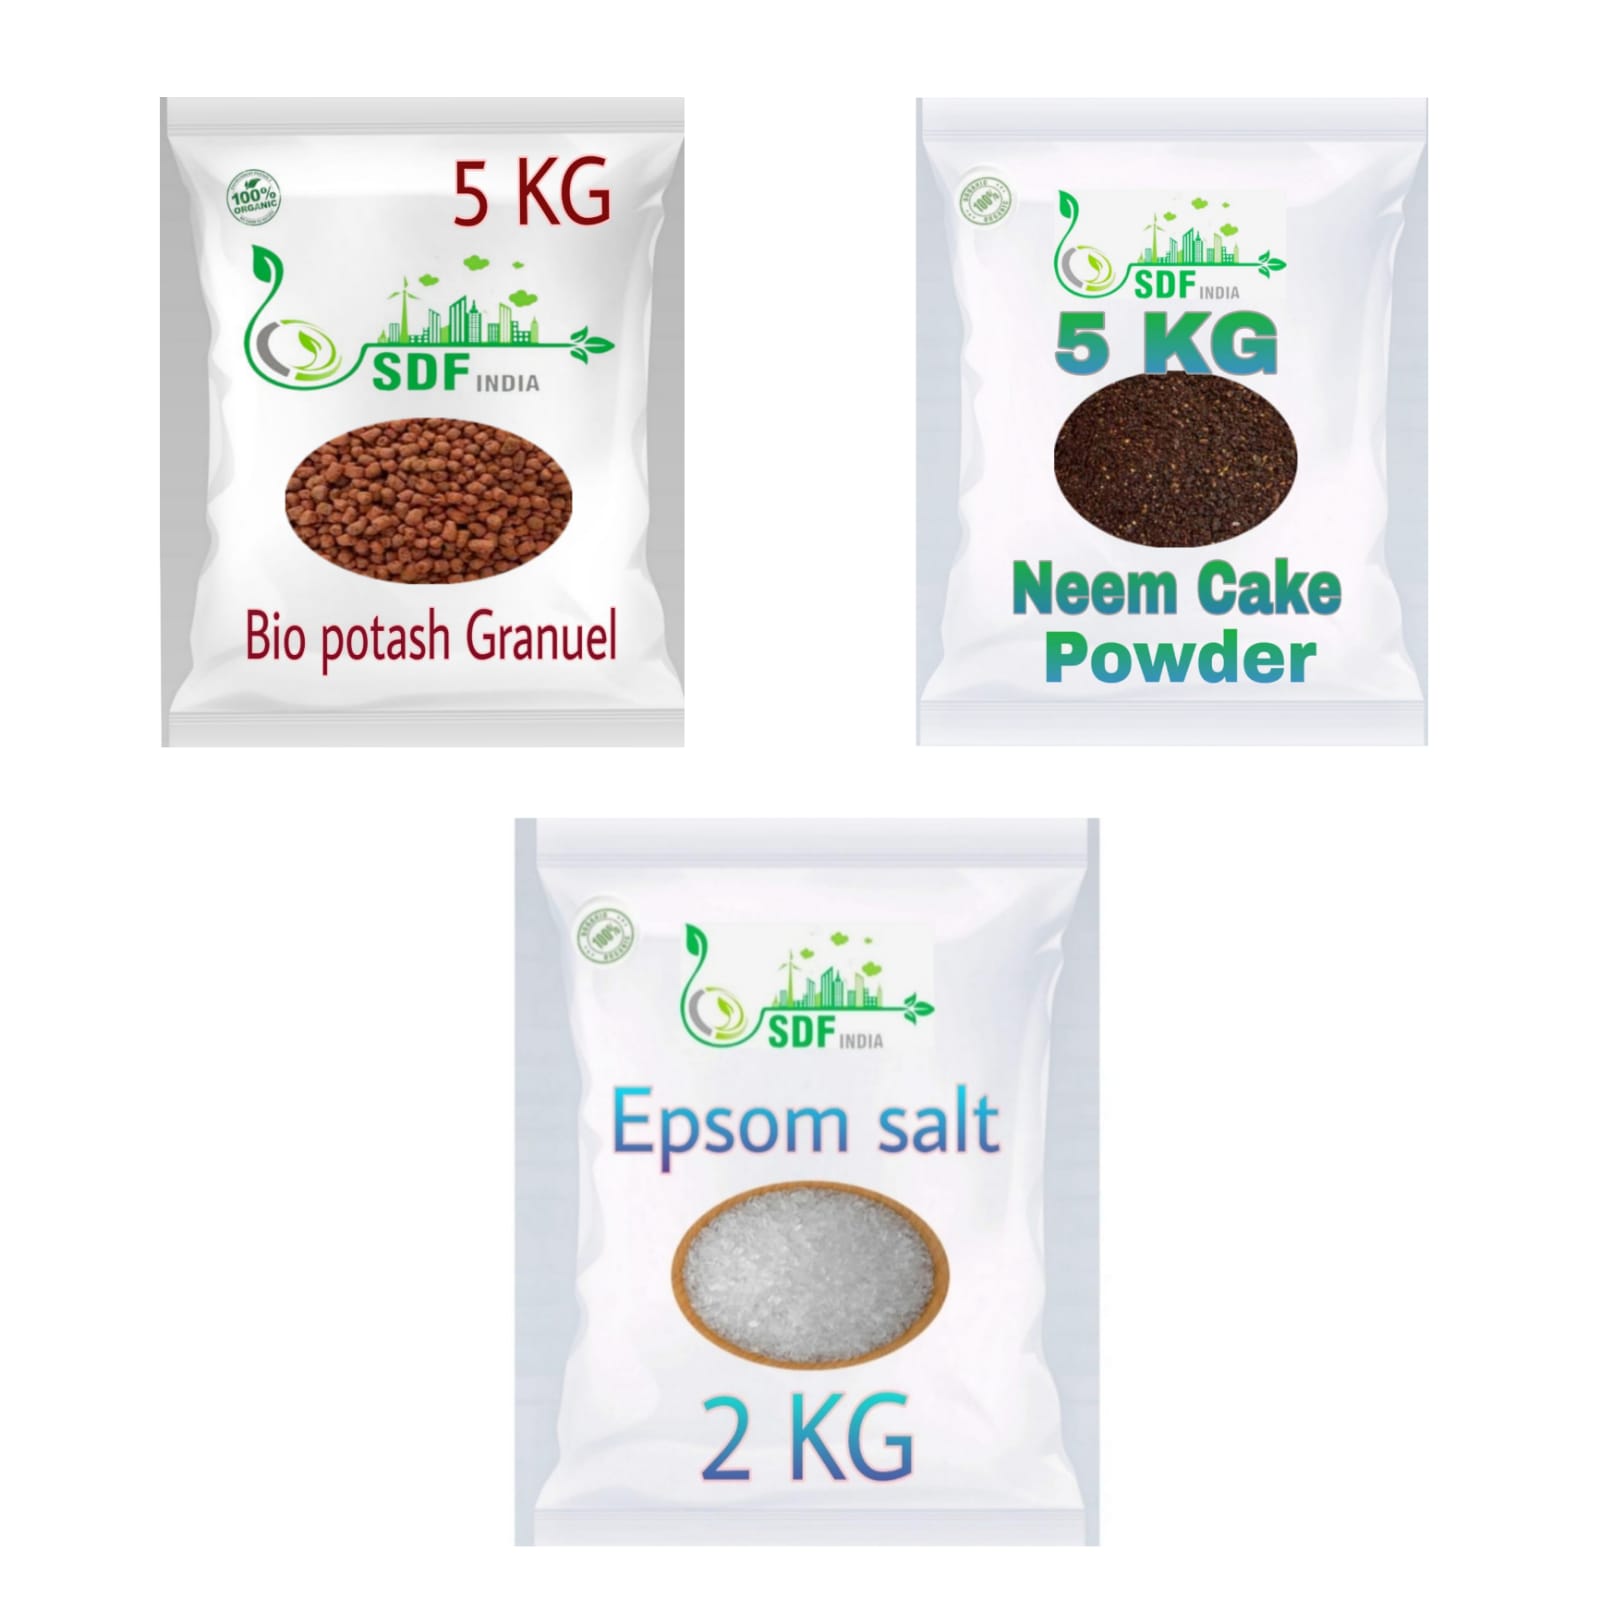 COMBO PACK OF 3 ( 5 KG Bio Potash Granuel/ 5KG Neem Cake Powder/ 2 KG Epsom Salt)